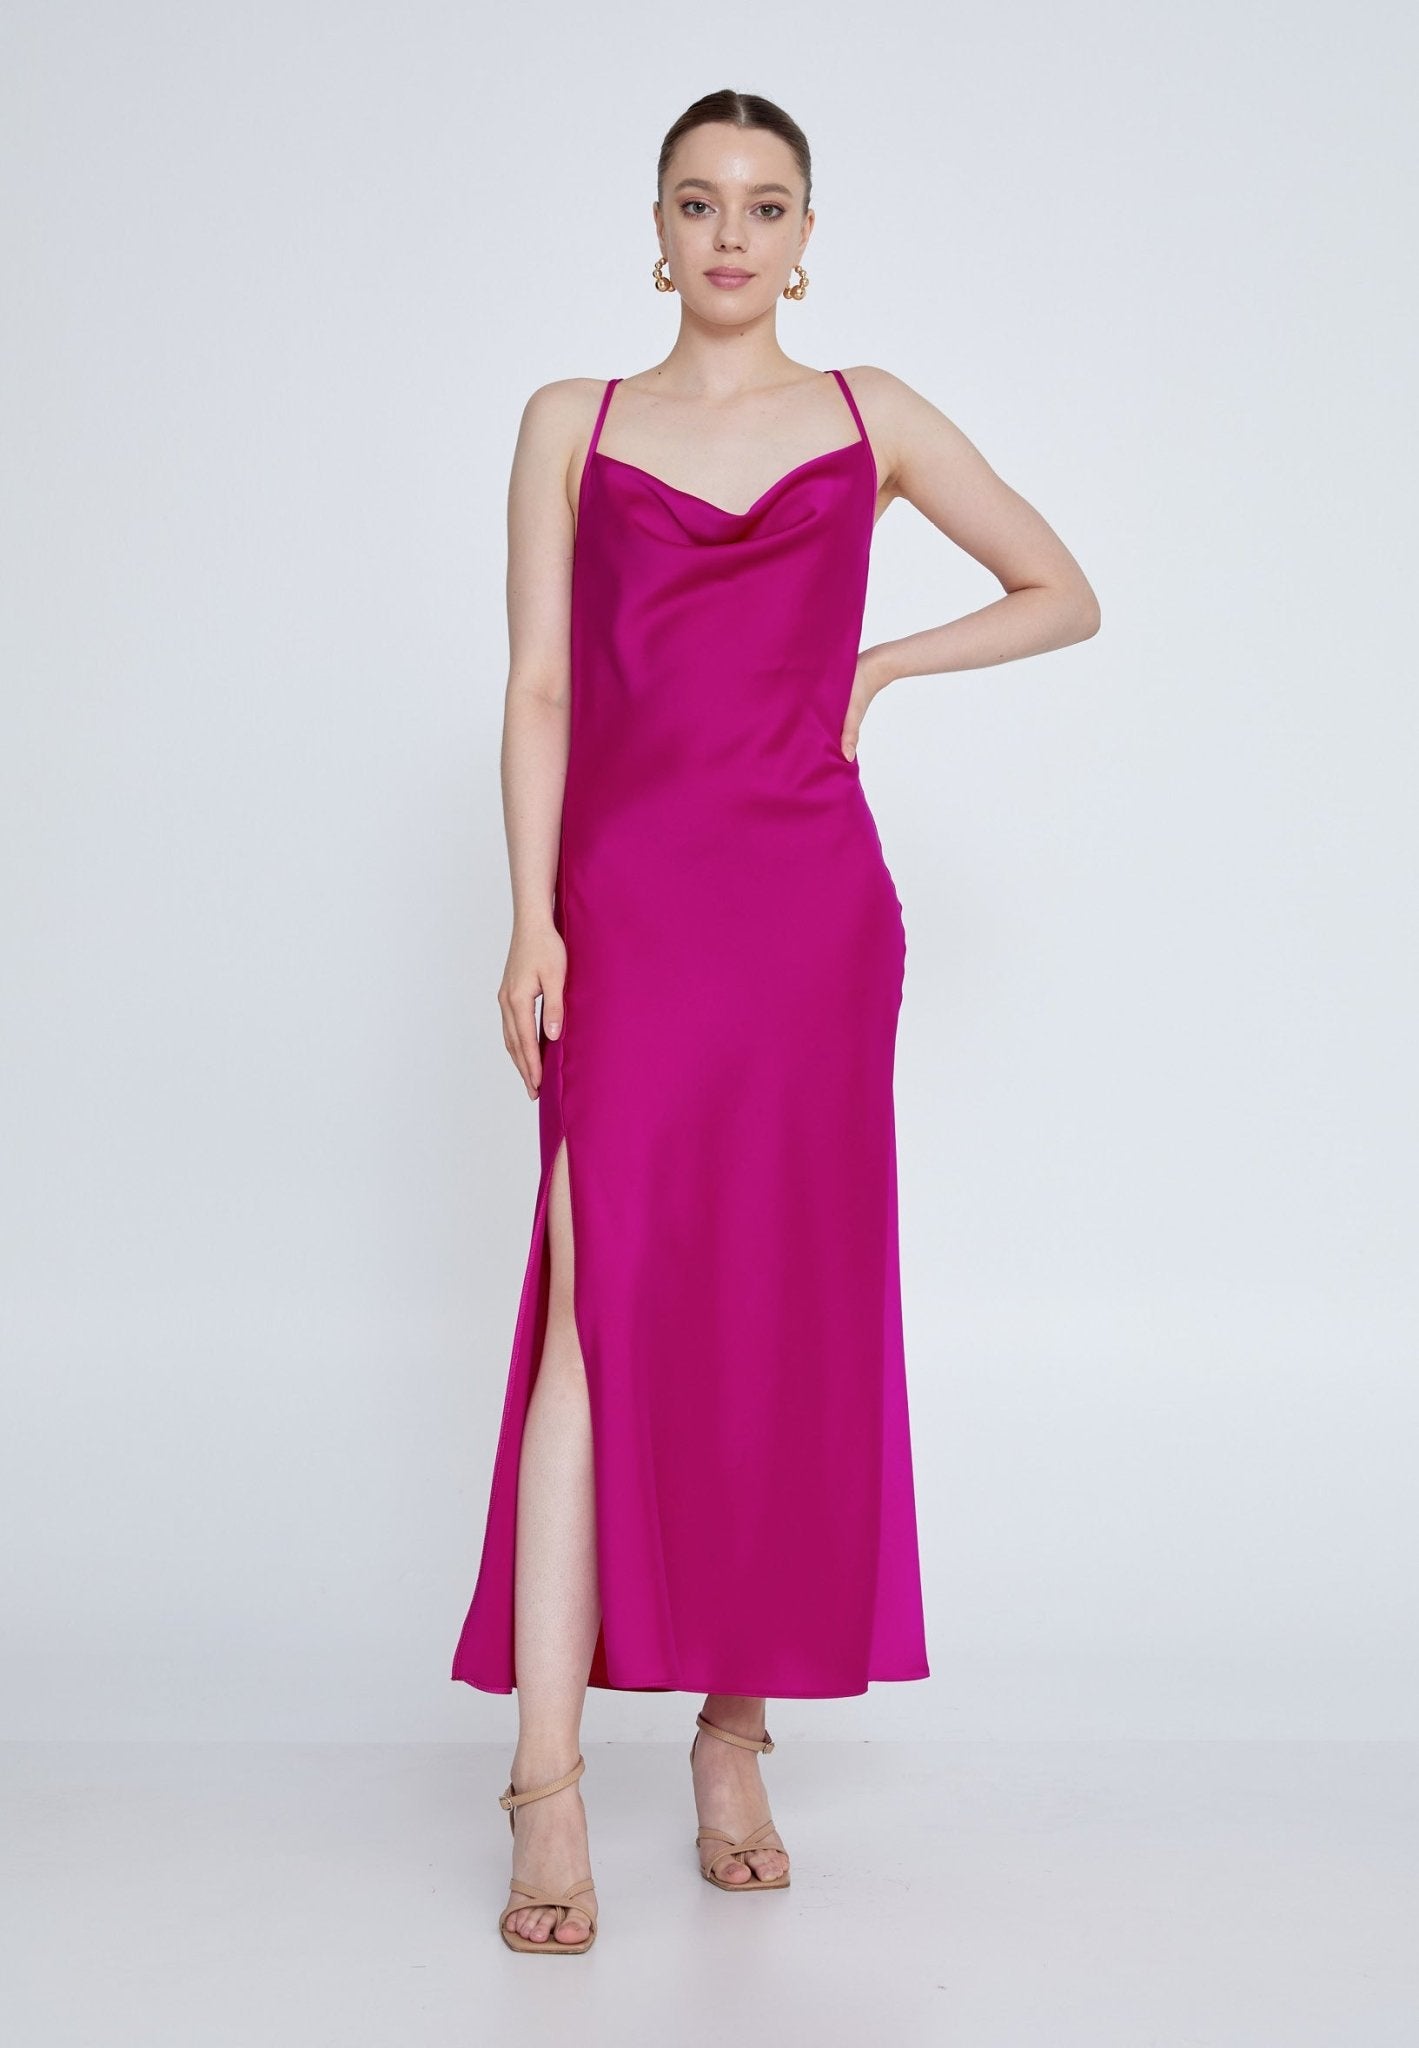 D7007 Fuchsia Slip Dress - La Elegant